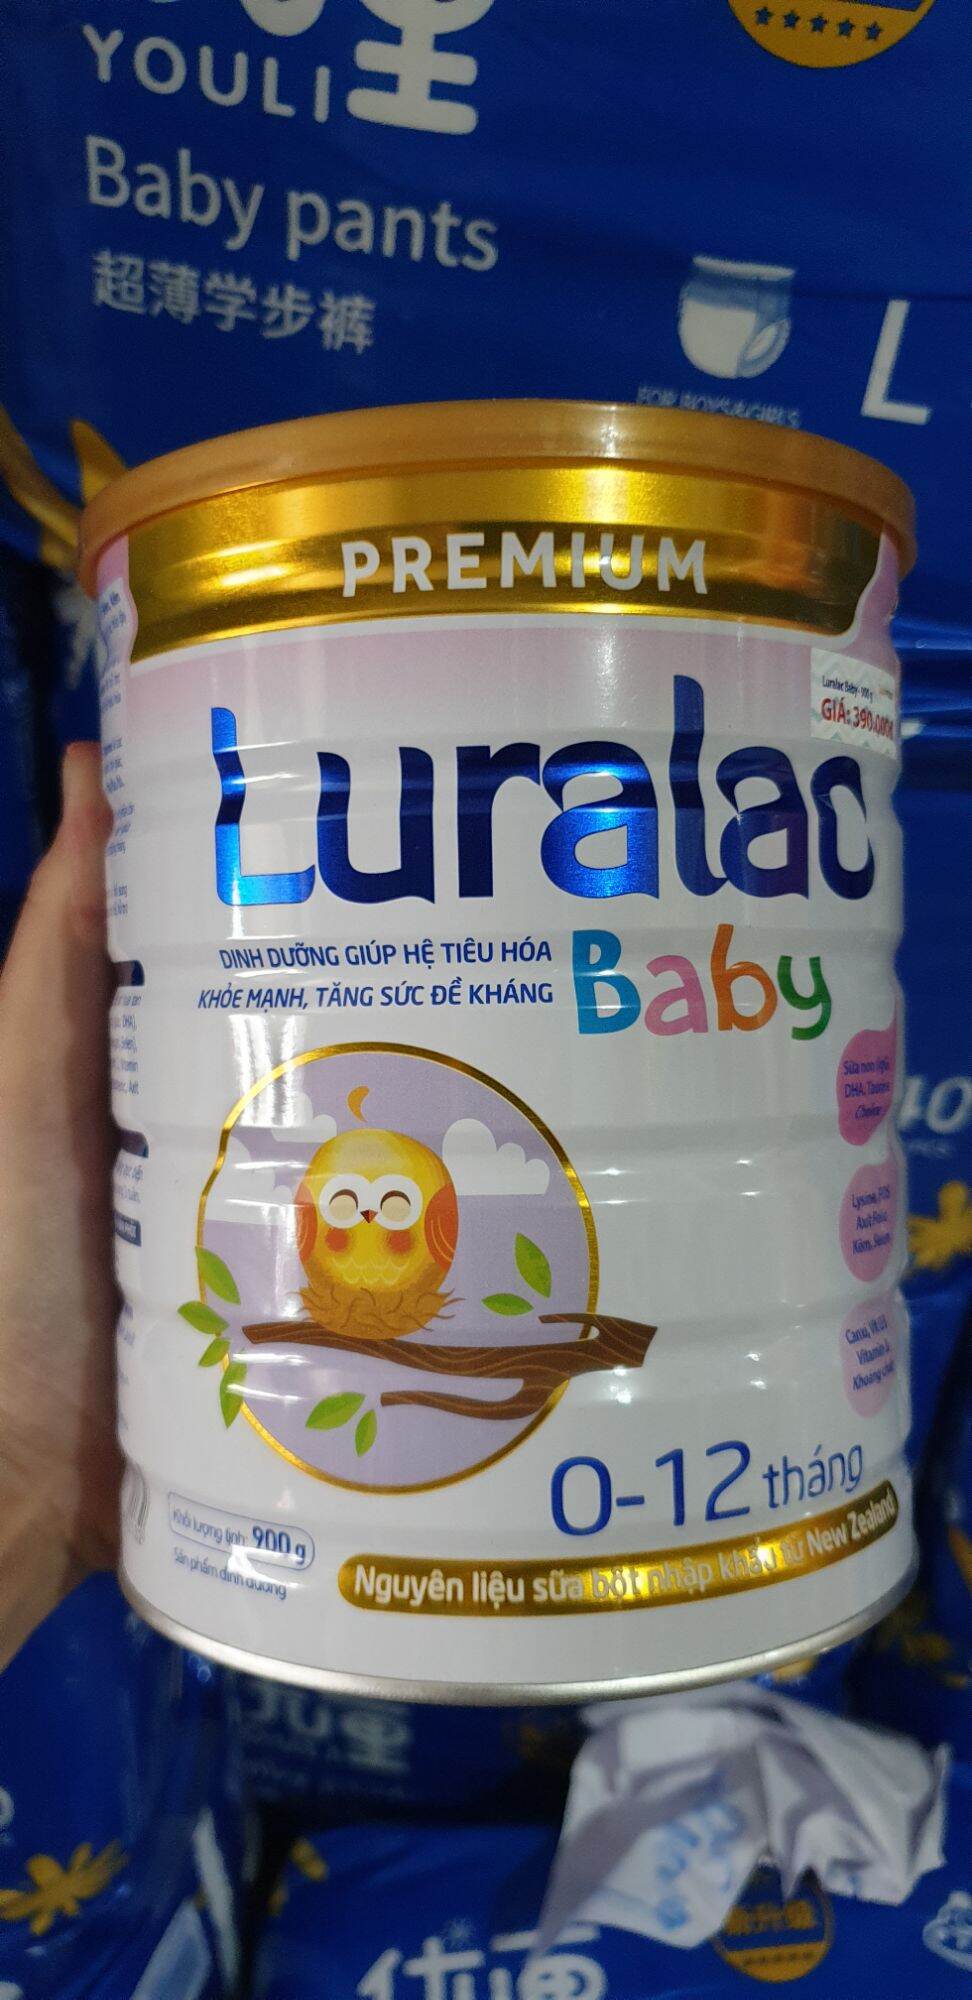 Sữa Luralac Baby 0-12 tháng 900g thumbnail